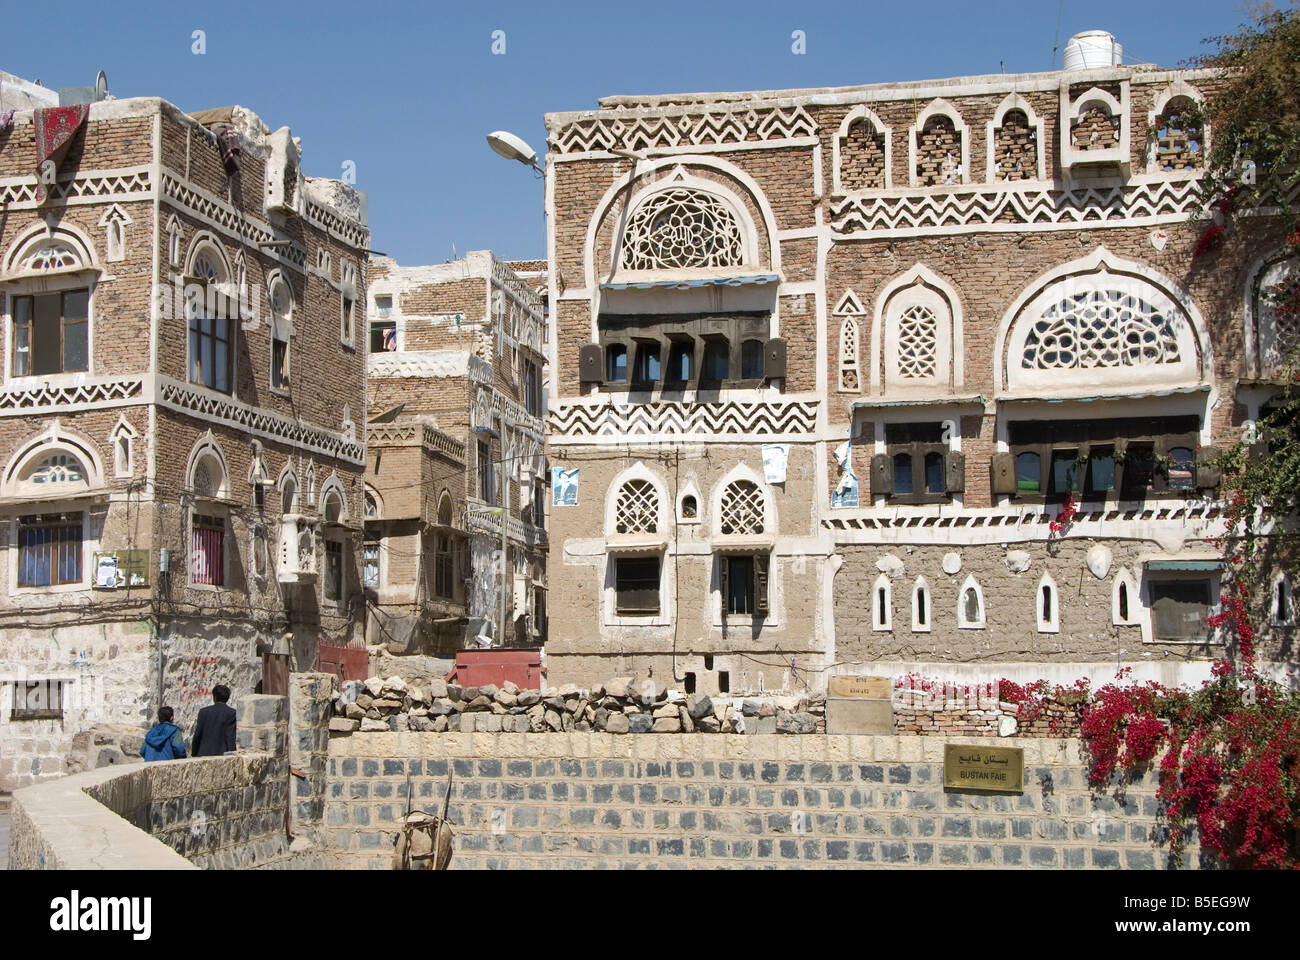 L'architecture de brique traditionnelle ornée de maisons anciennes ville Site du patrimoine mondial de l'UNESCO capitale du Yémen Moyen-orient Banque D'Images